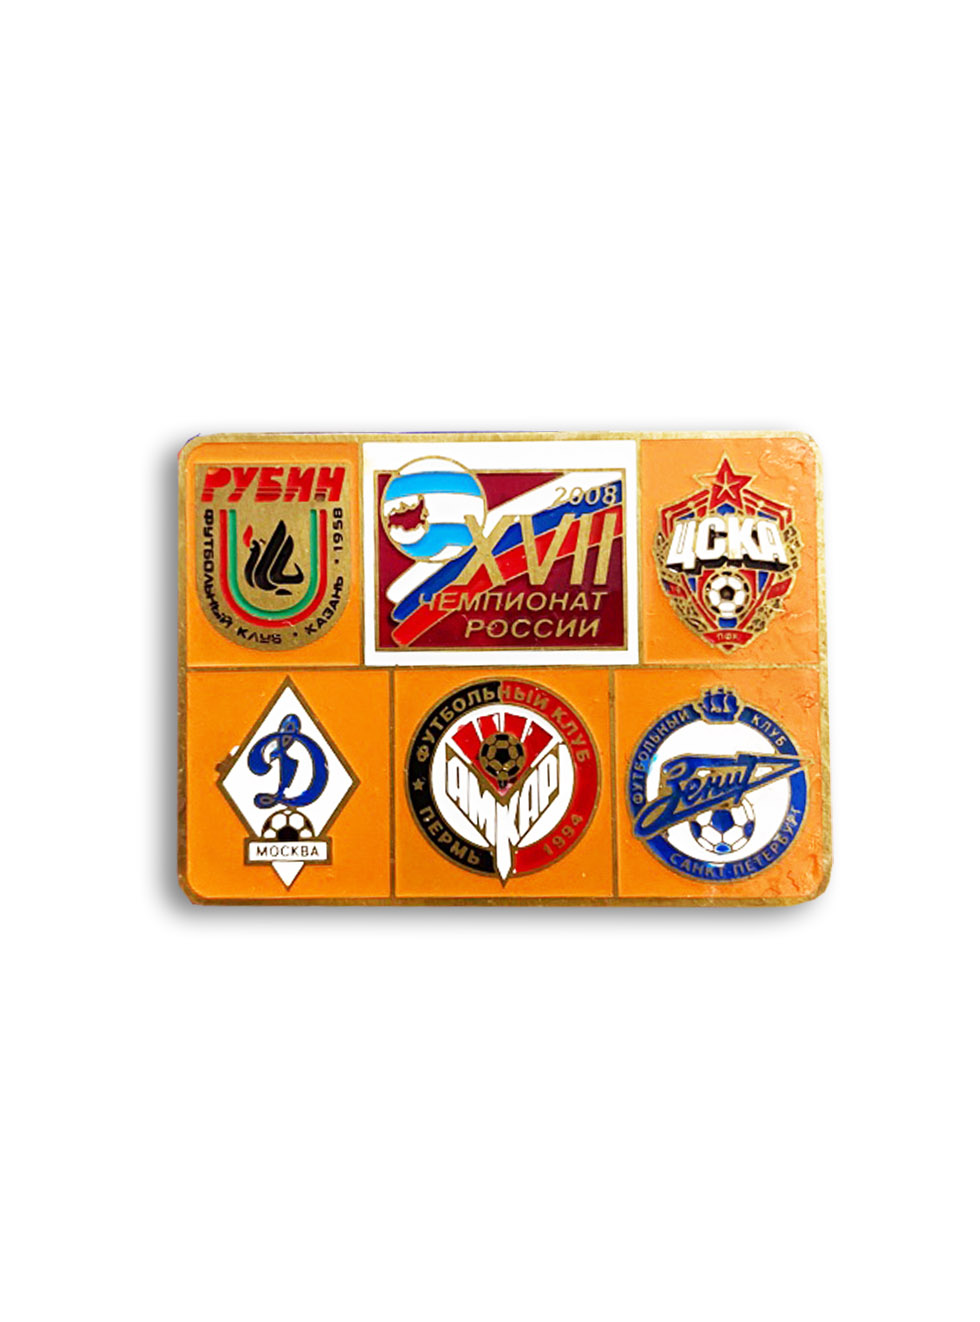 Коллекционный значок XVII Чемпионат России 2008